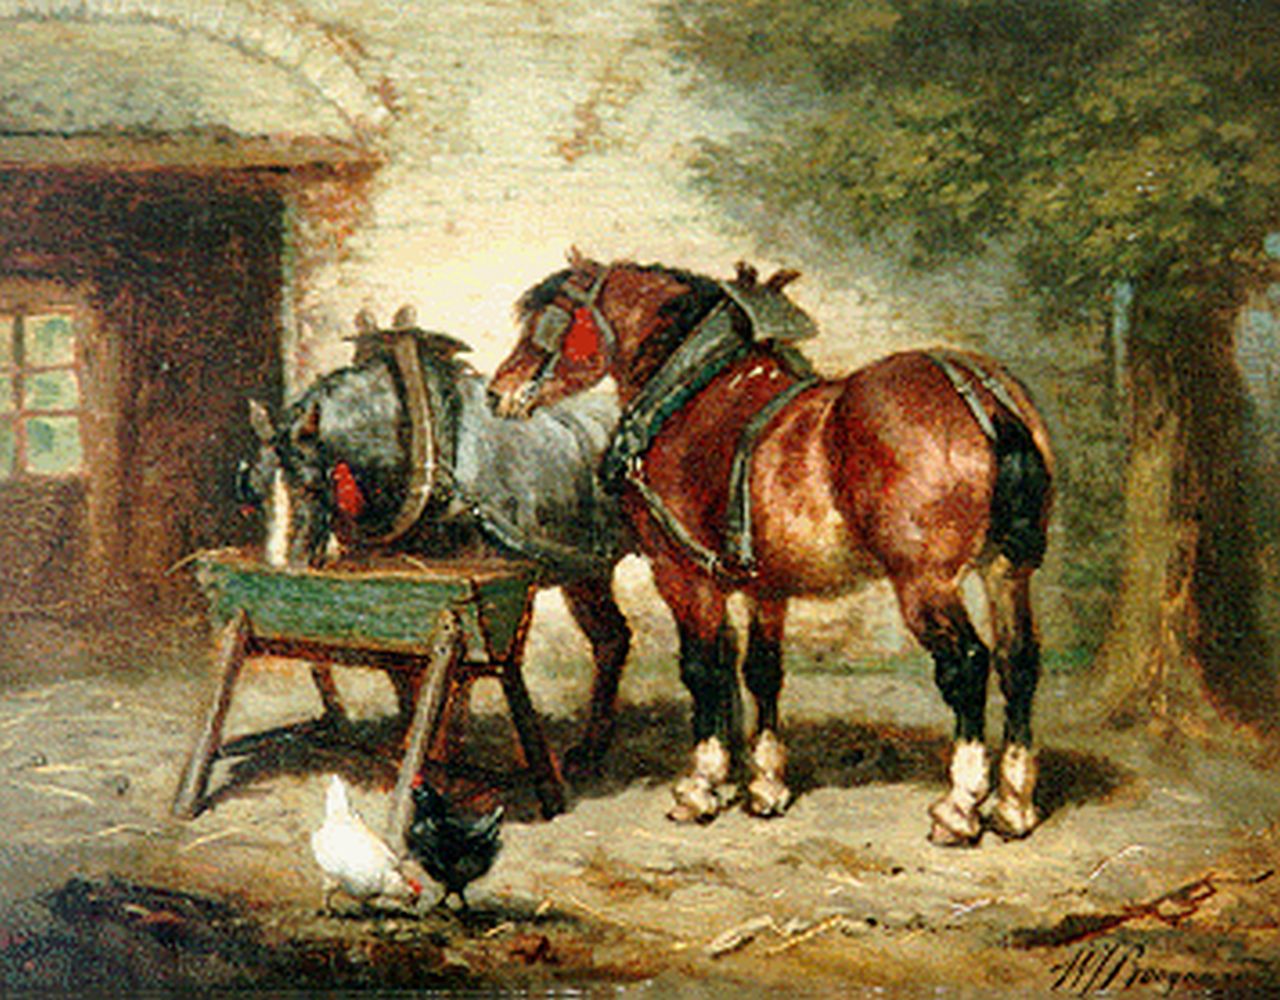 Boogaard W.J.  | Willem Johan Boogaard, Werkpaarden bij de trog, olieverf op paneel 27,0 x 21,0 cm, gesigneerd rechtsonder